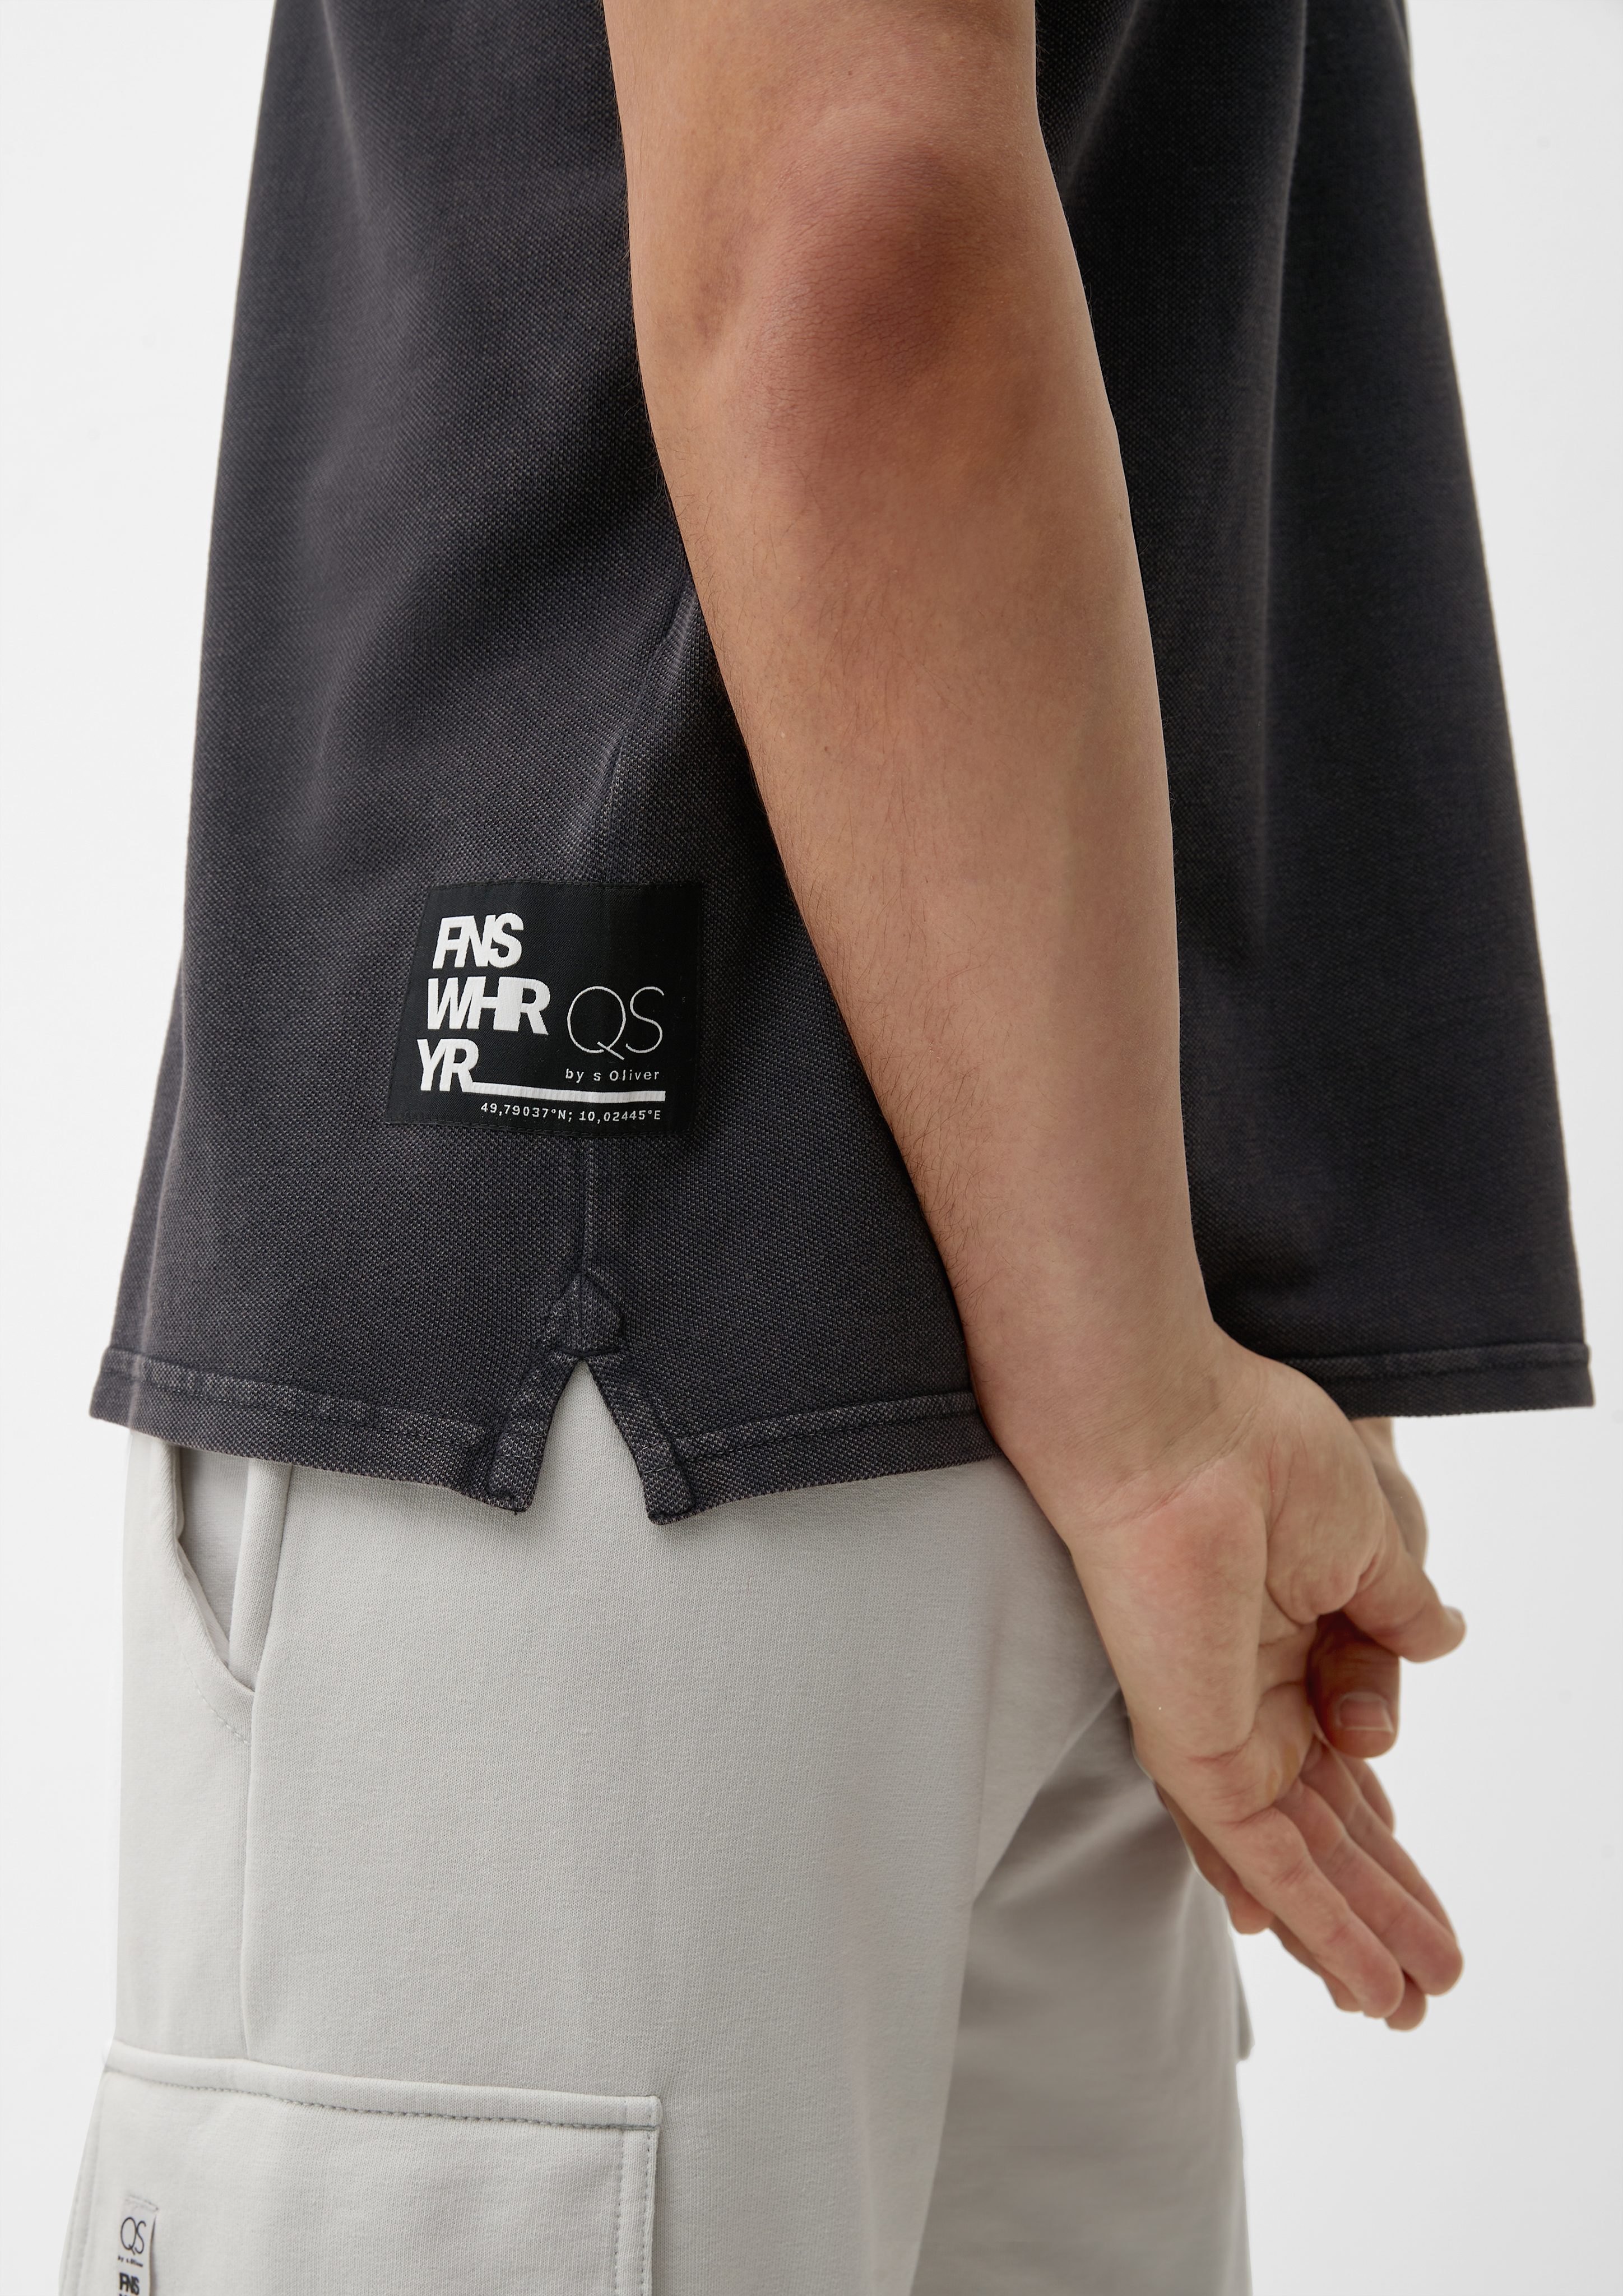 Poloshirt aus Waschung Stickerei, Kurzarmshirt QS dunkelgrau Baumwoll-Piqué Applikation,